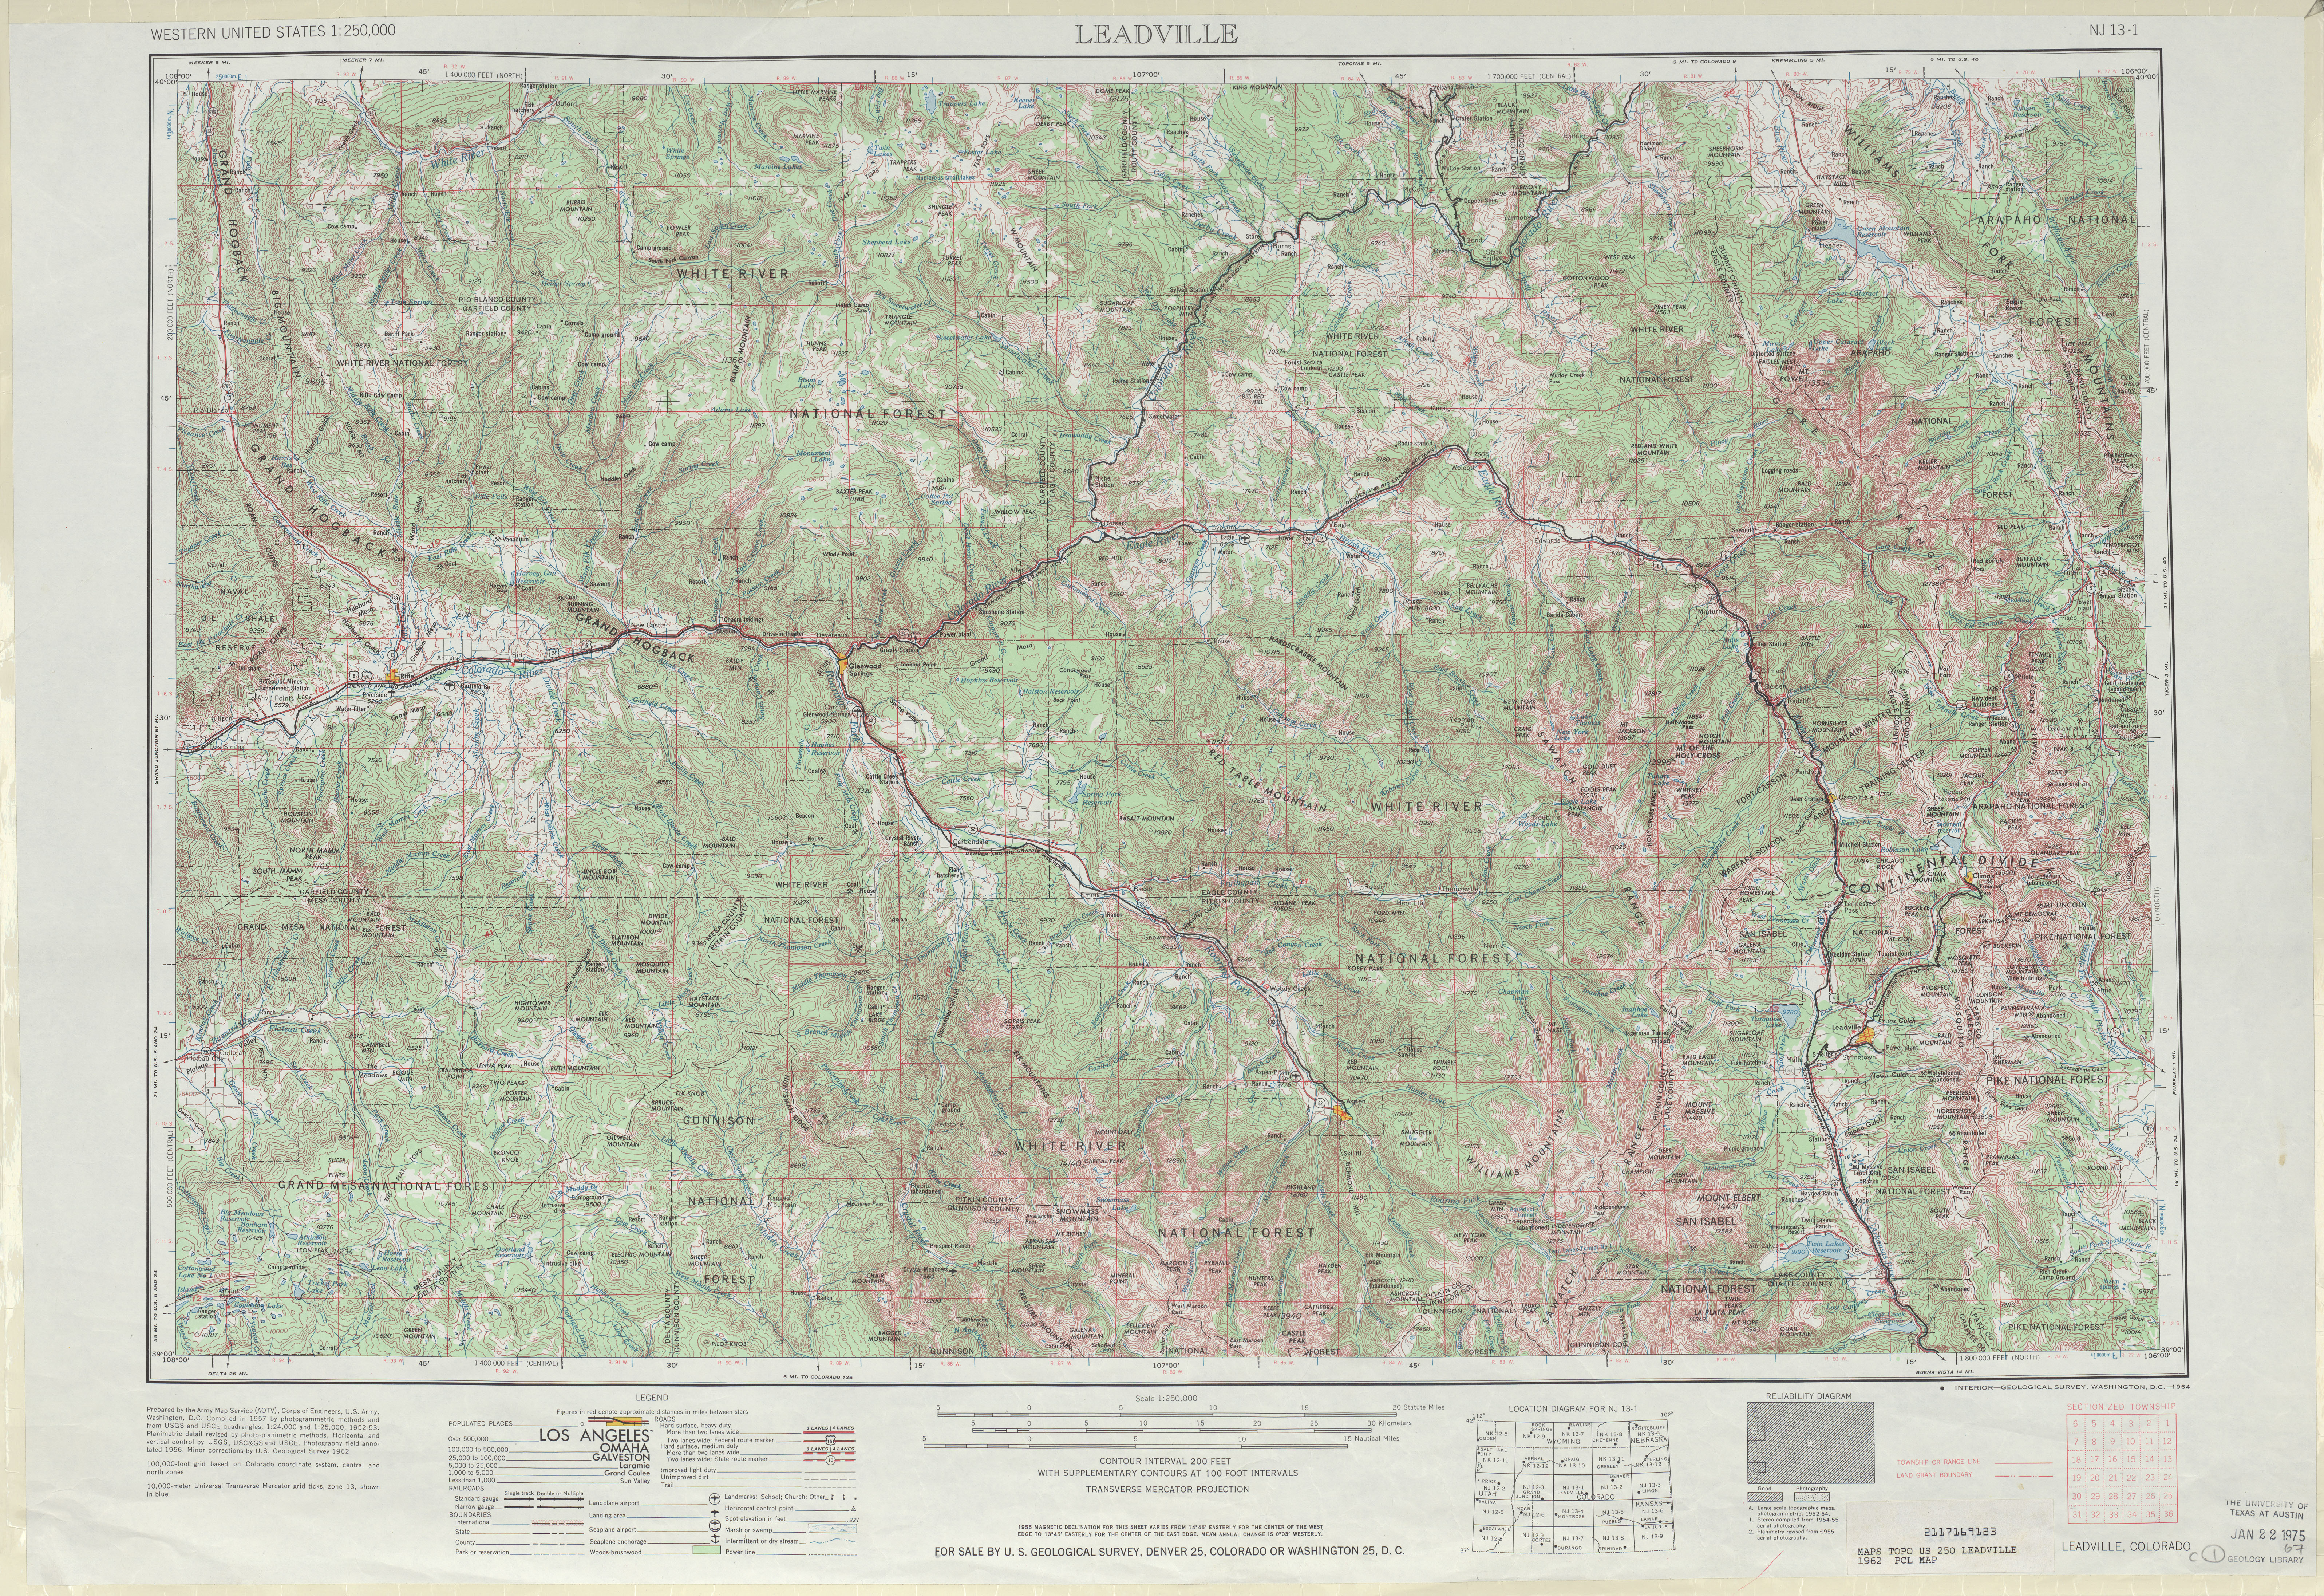 Hoja Leadville del Mapa Topográfico de los Estados Unidos 1962